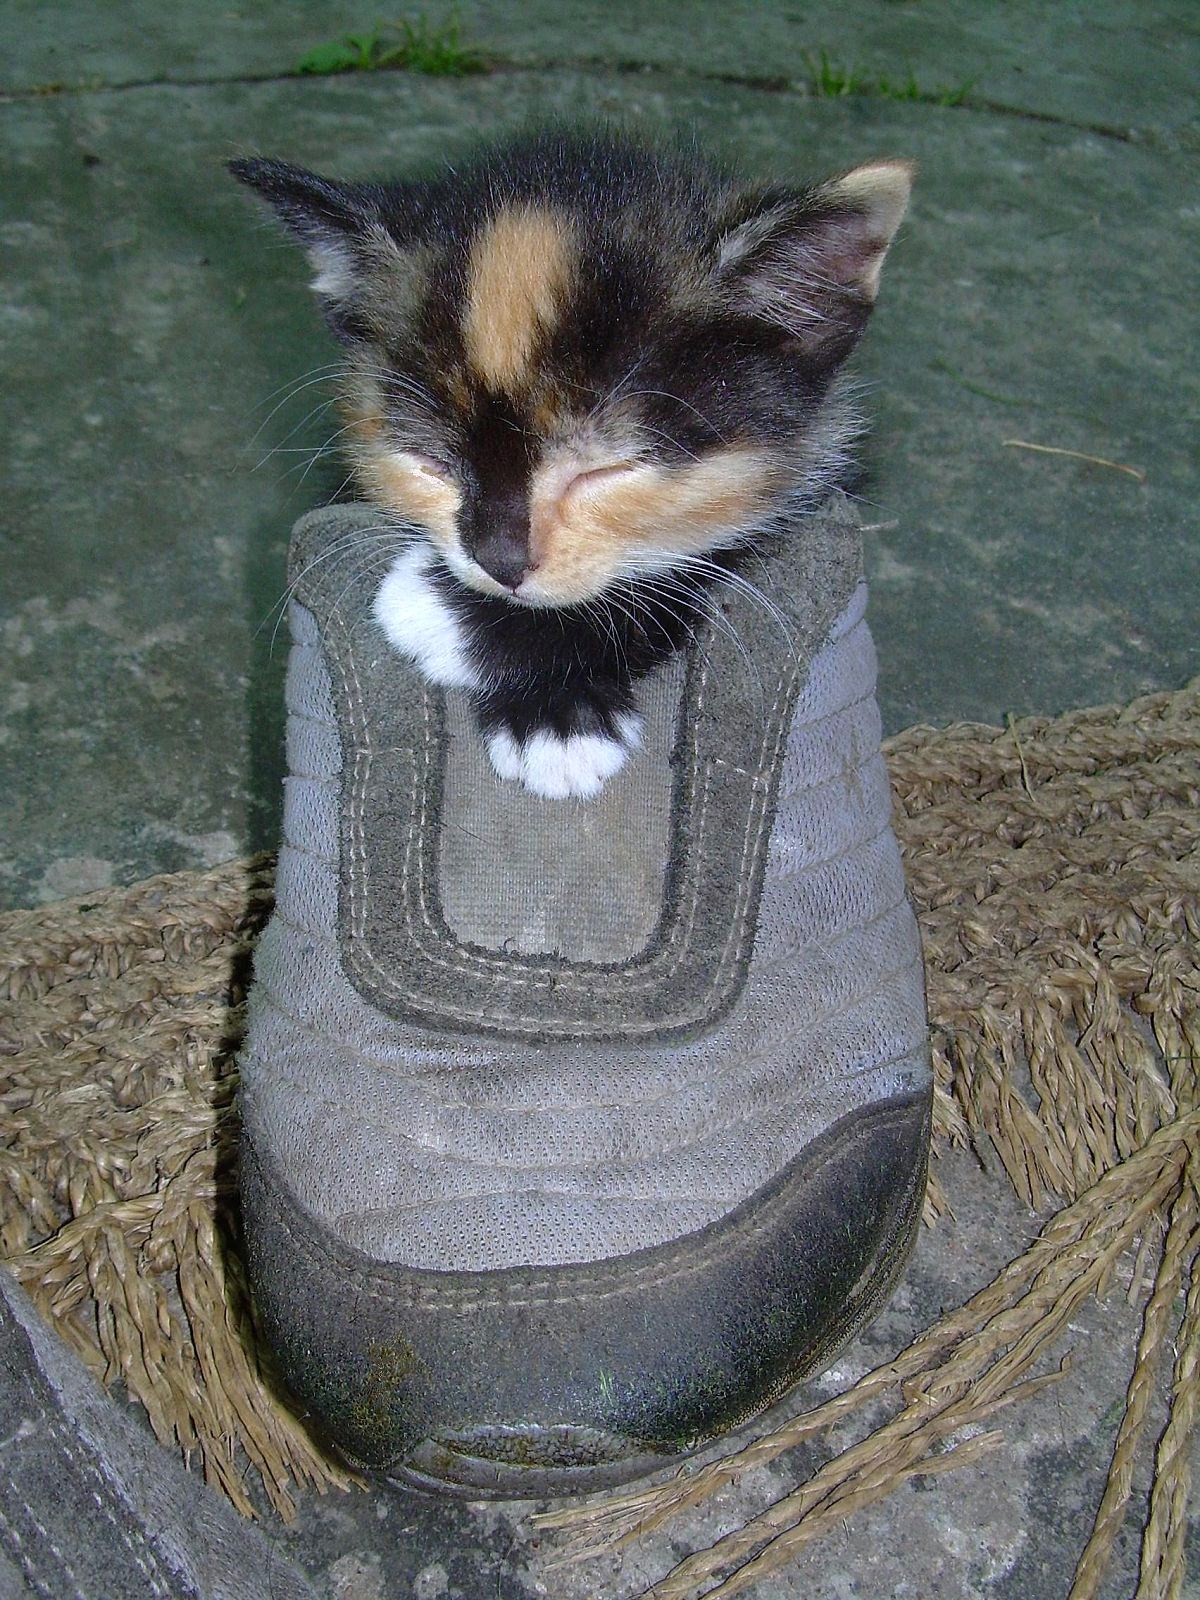 Malé kotě spalo v botě...